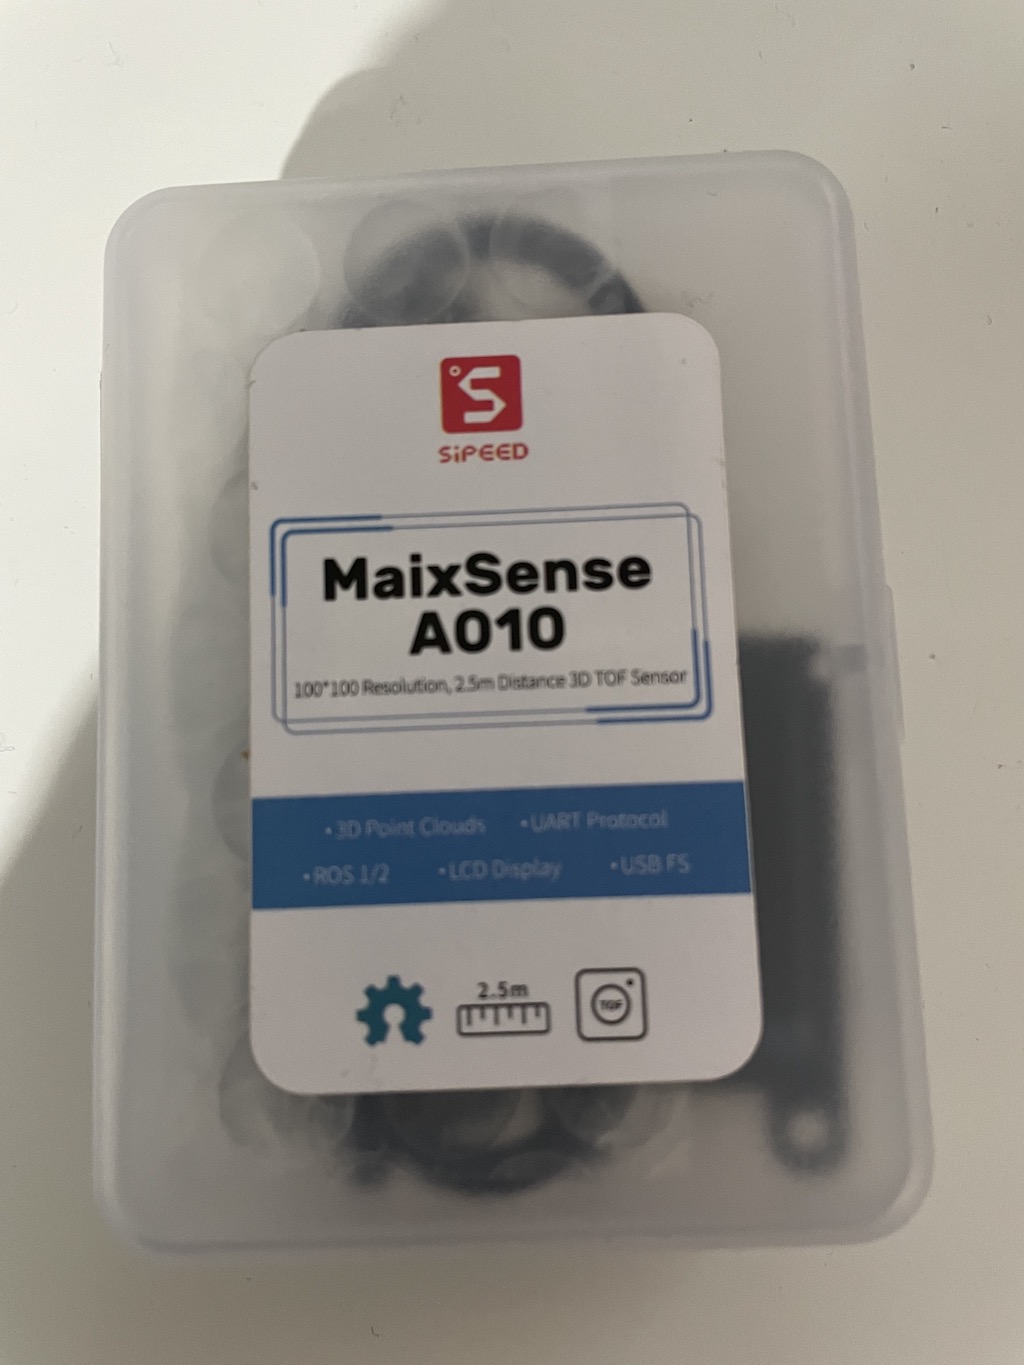 MaixSense A010 Sensor in box